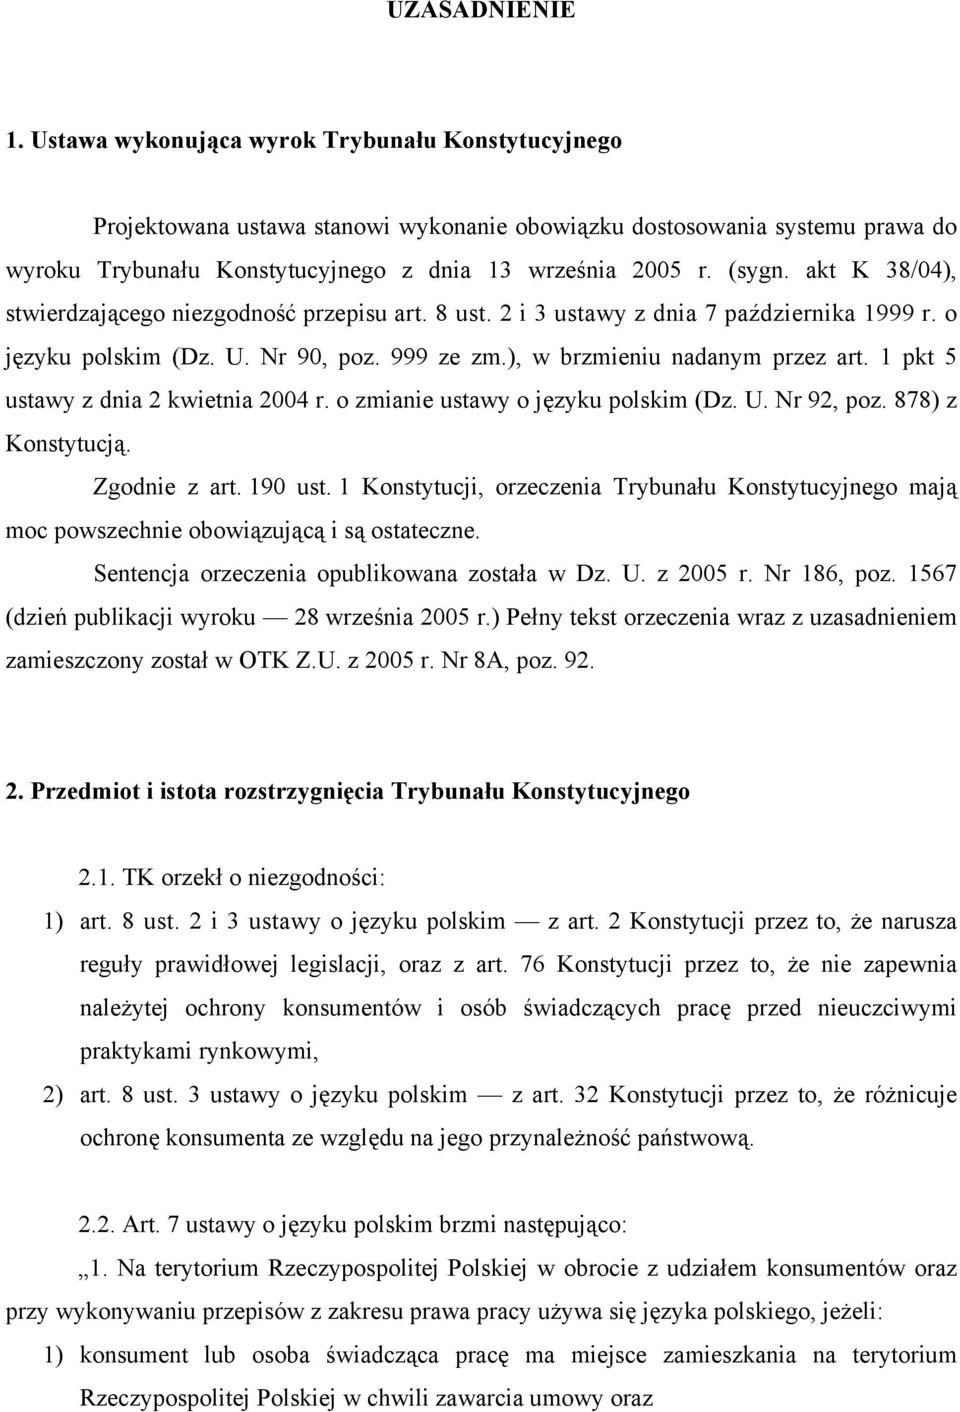 akt K 38/04), stwierdzającego niezgodność przepisu art. 8 ust. 2 i 3 ustawy z dnia 7 października 1999 r. o języku polskim (Dz. U. Nr 90, poz. 999 ze zm.), w brzmieniu nadanym przez art.